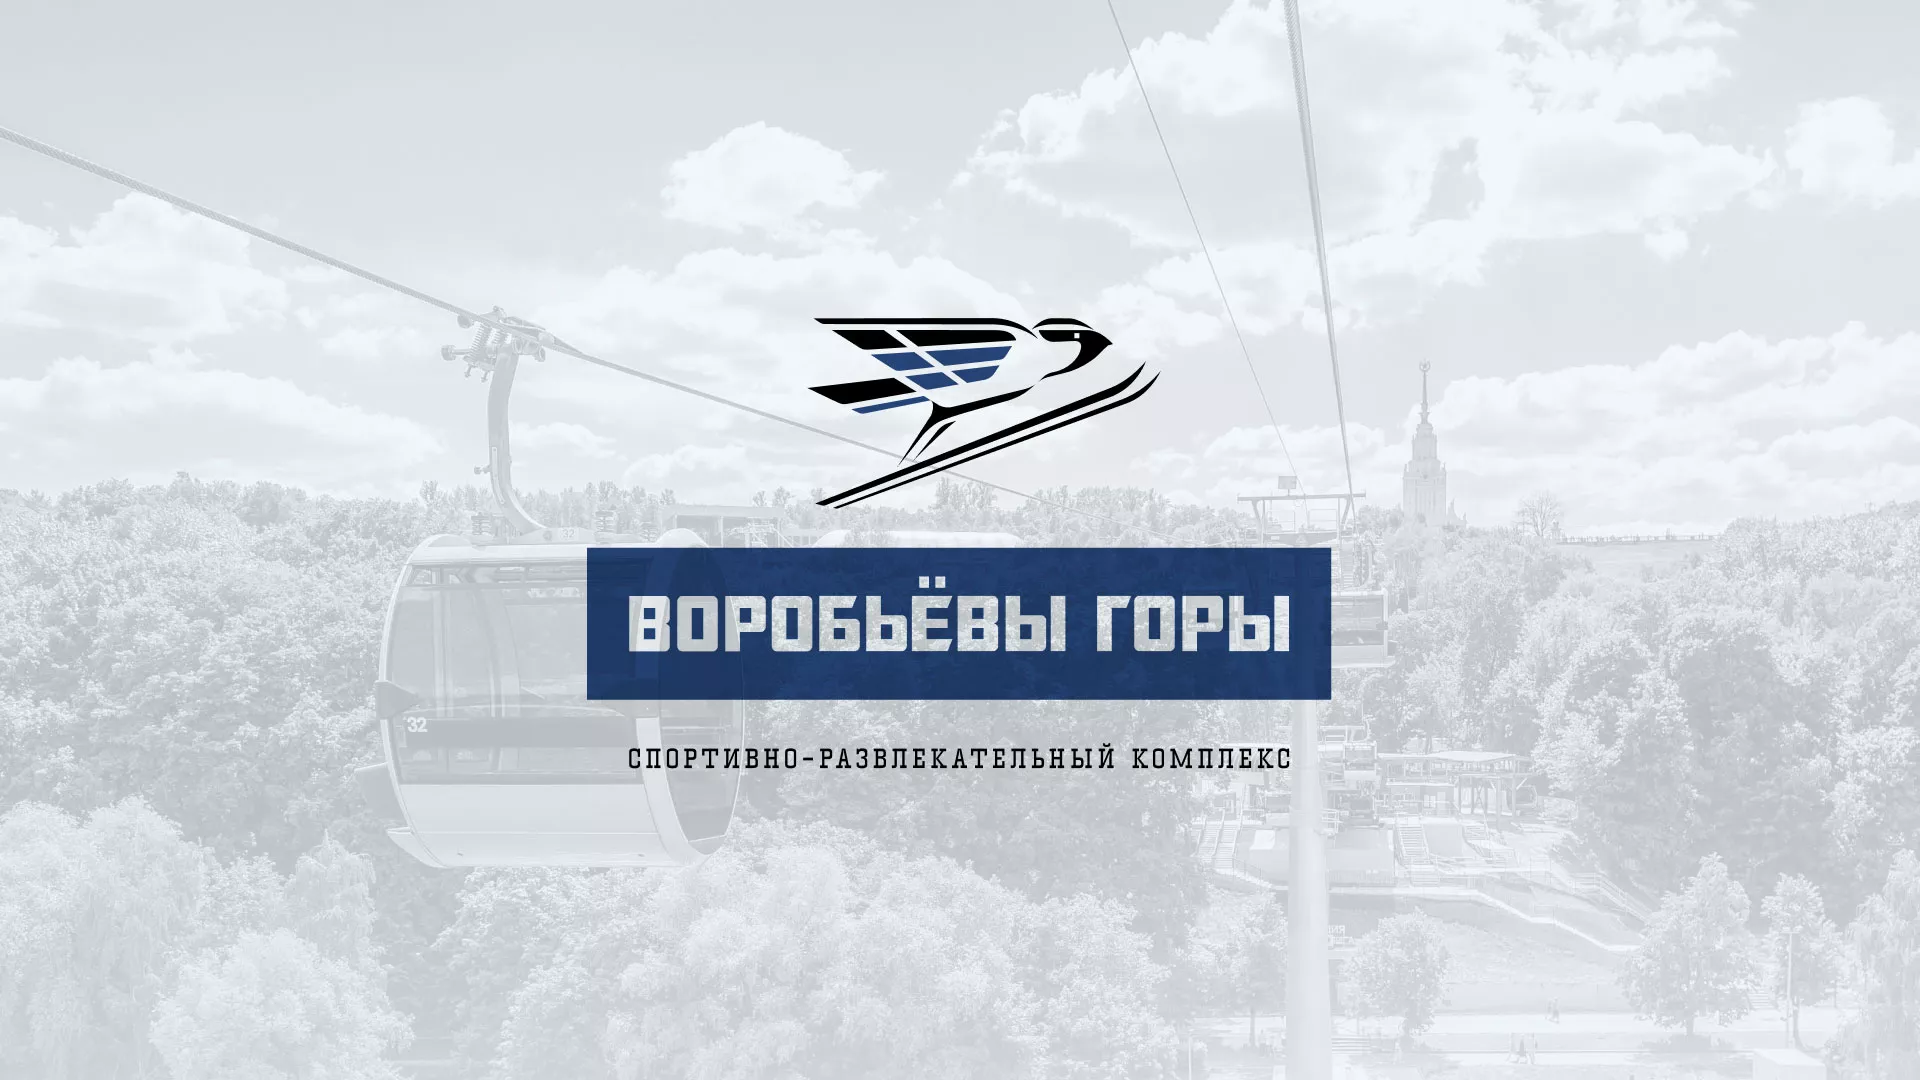 Разработка сайта в Александровске для спортивно-развлекательного комплекса «Воробьёвы горы»